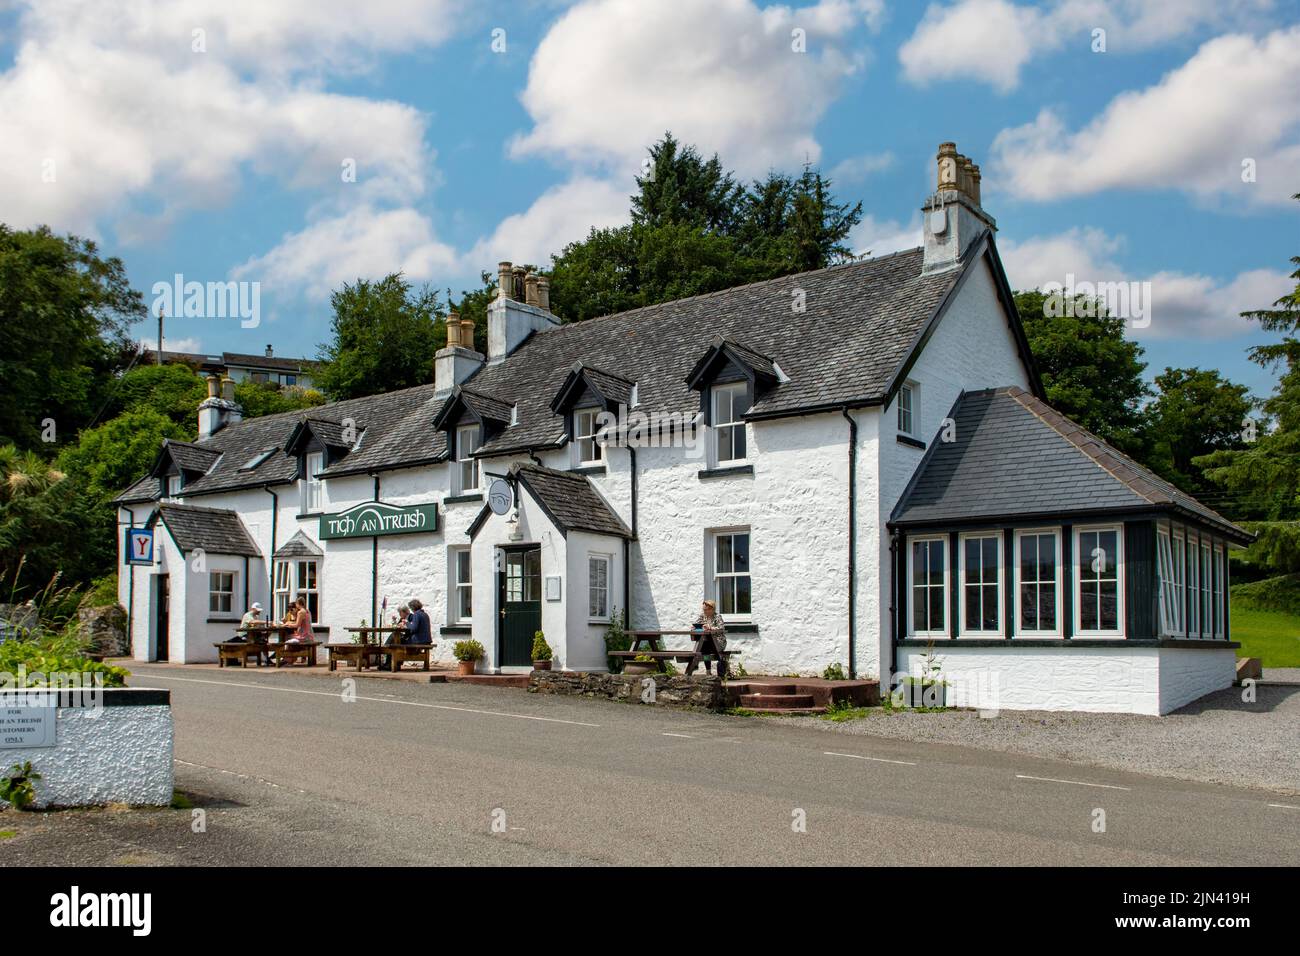 Tigh an Truish Pub, Clachan Bridge, Argyll, Escocia Foto de stock